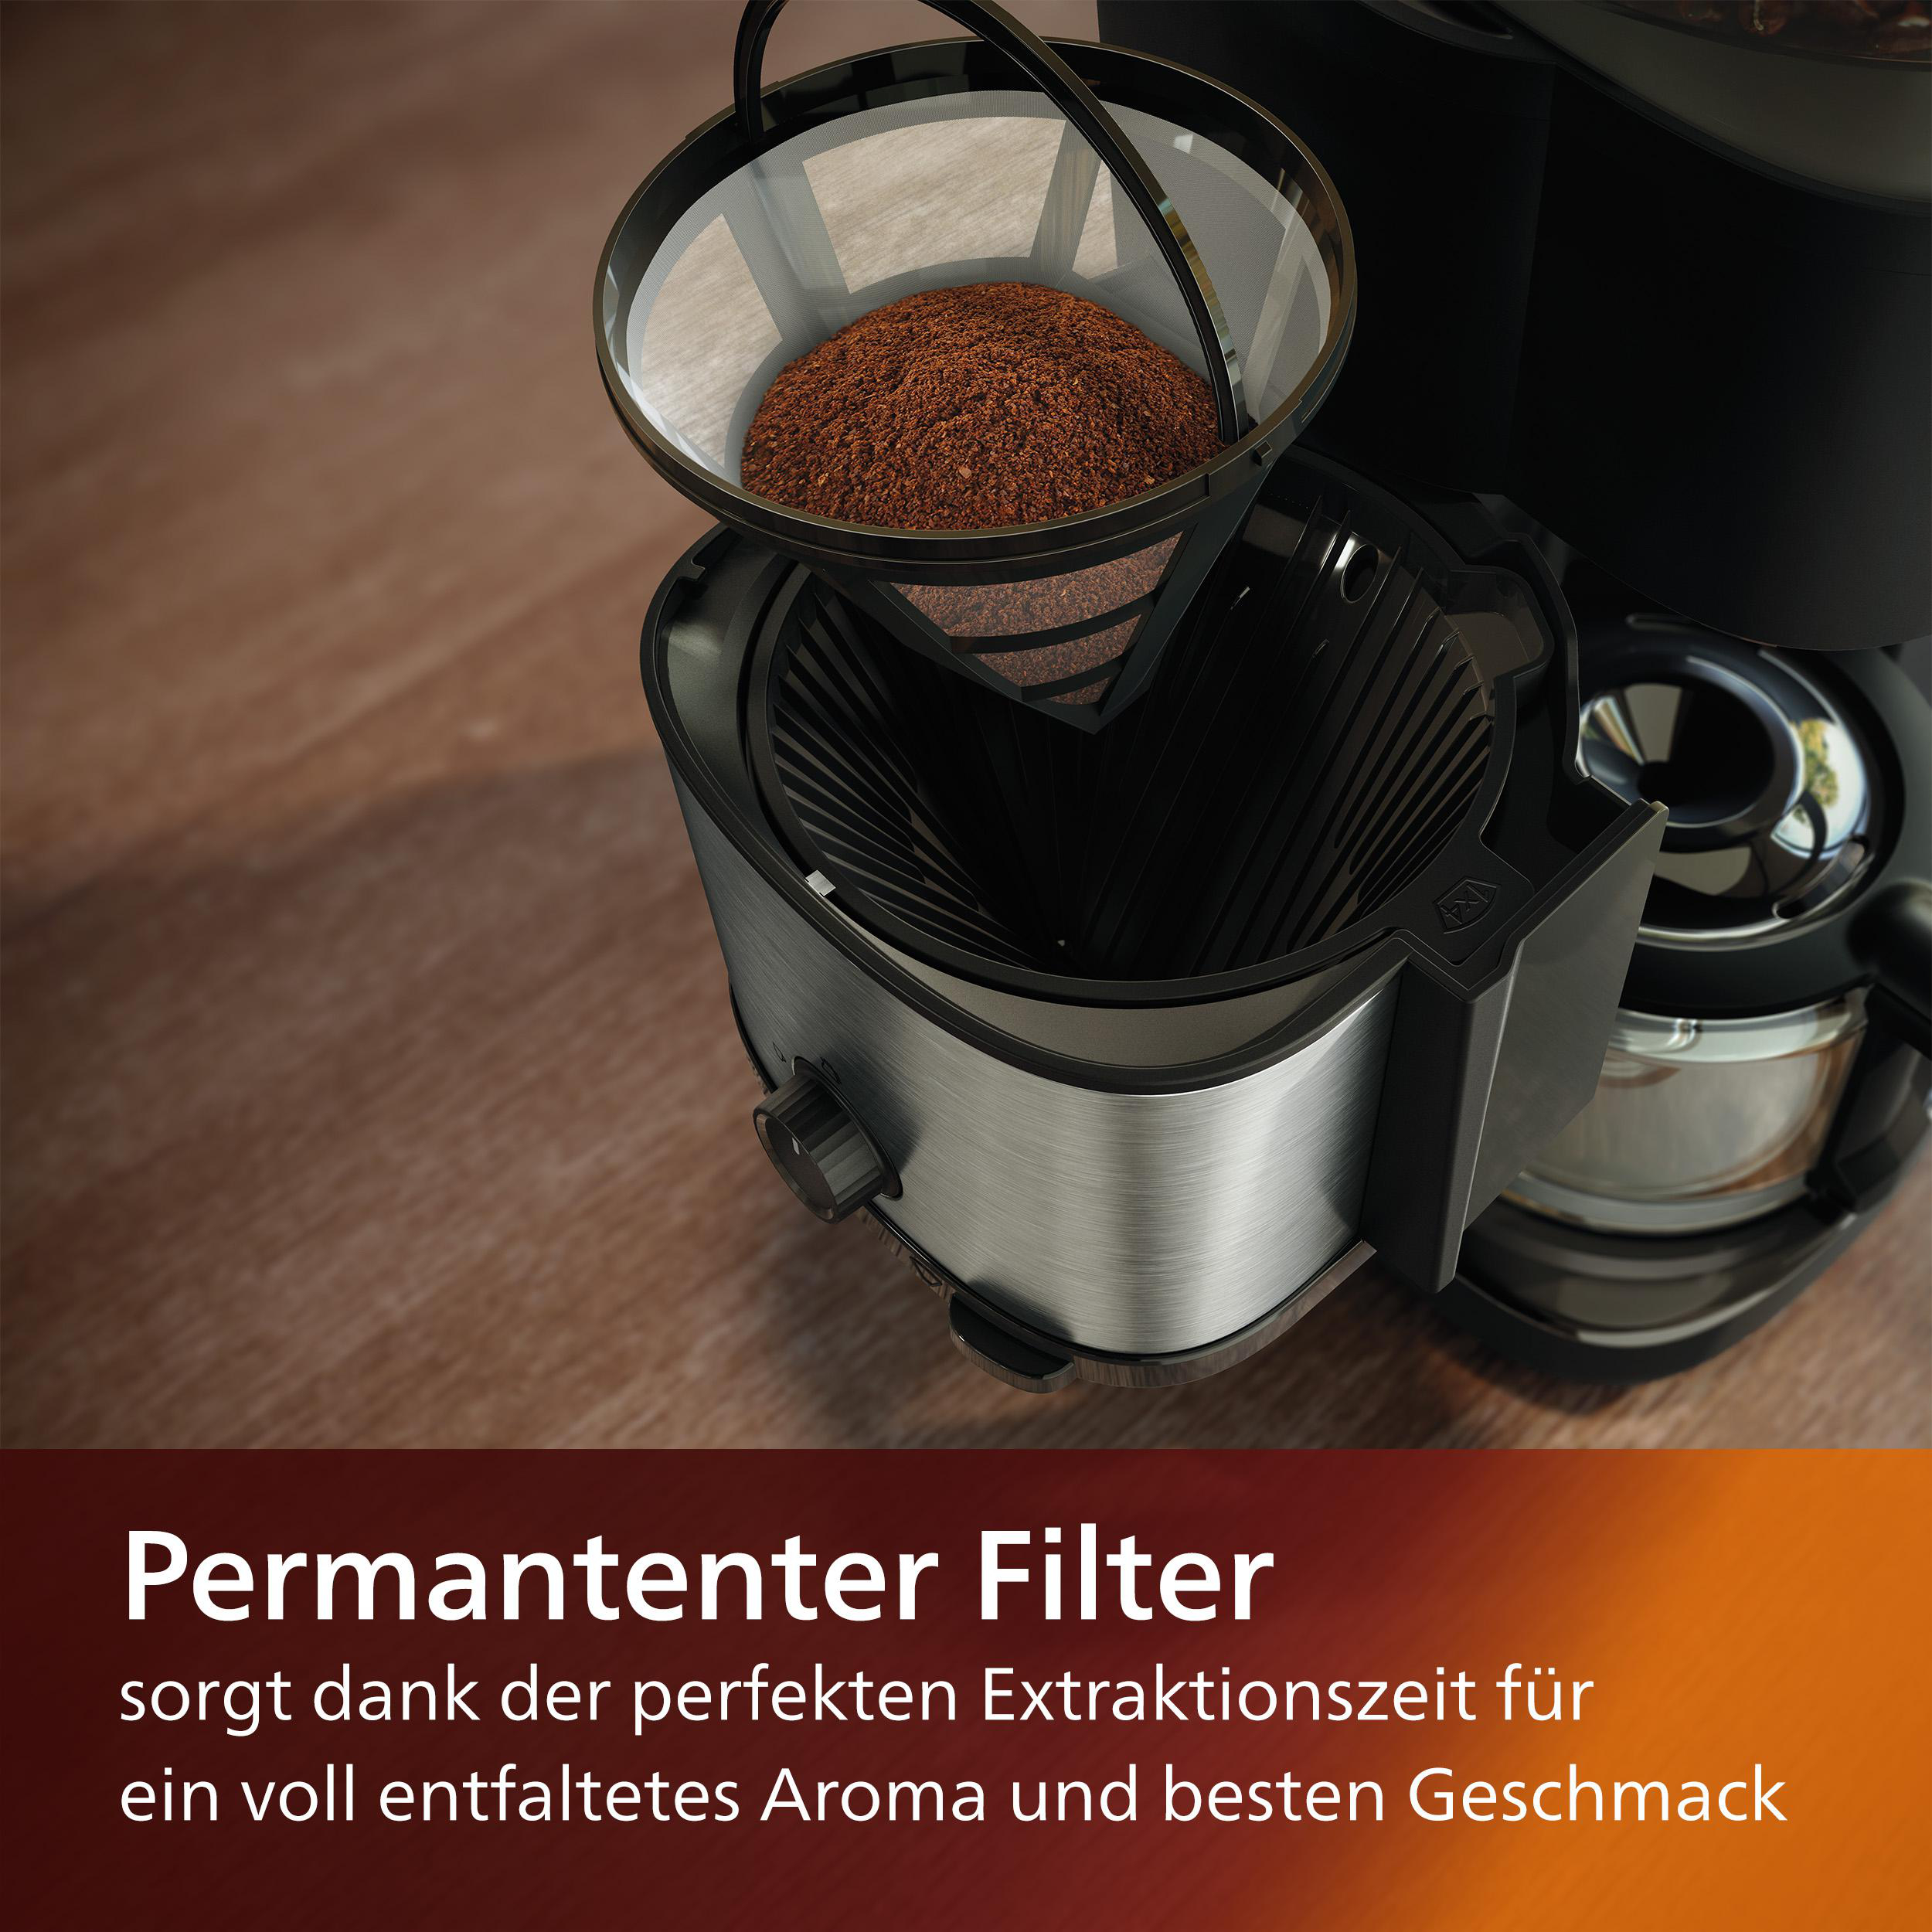 Dosierung Kaffeemaschine Smart und PHILIPS Brew, Schwarz/Silber und HD7900/50 mit inkl. Mahlwerk, All-in-1 Permanentfilter Duo-Kaffeebohnenbehälter, Dosierlöffel